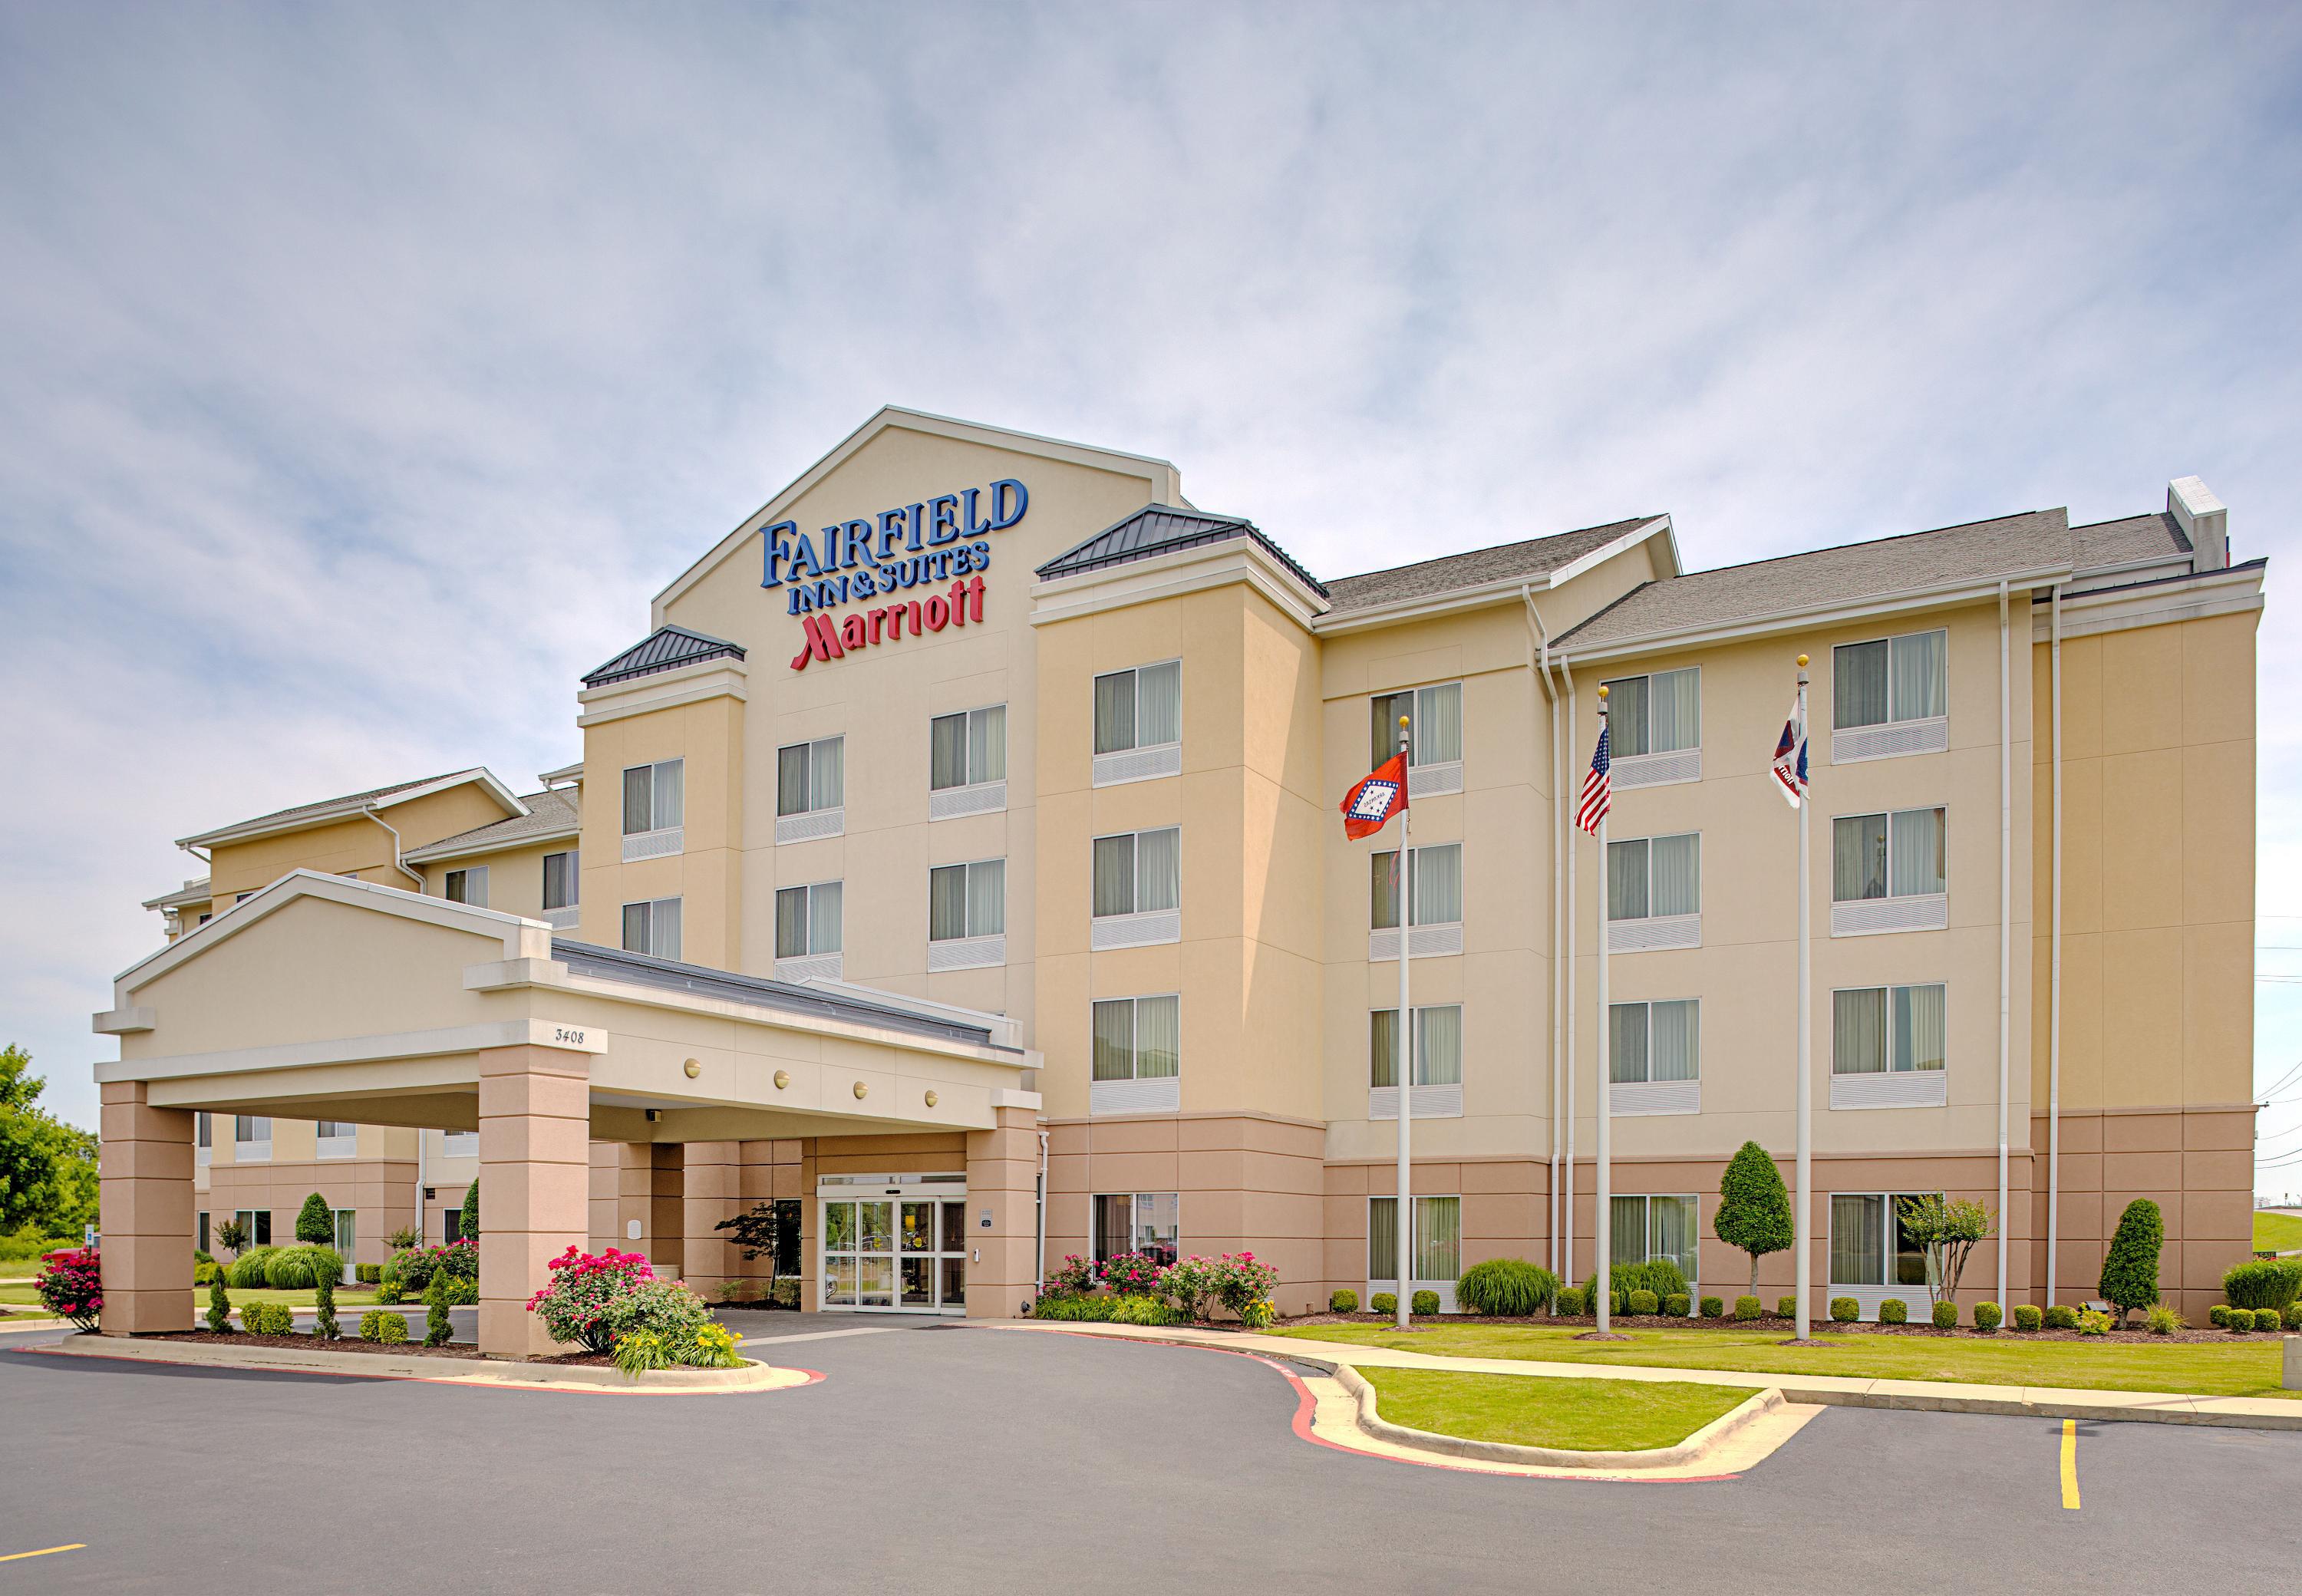 Photo of Fairfield Inn & Suites by Marriott Jonesboro, Jonesboro, AR